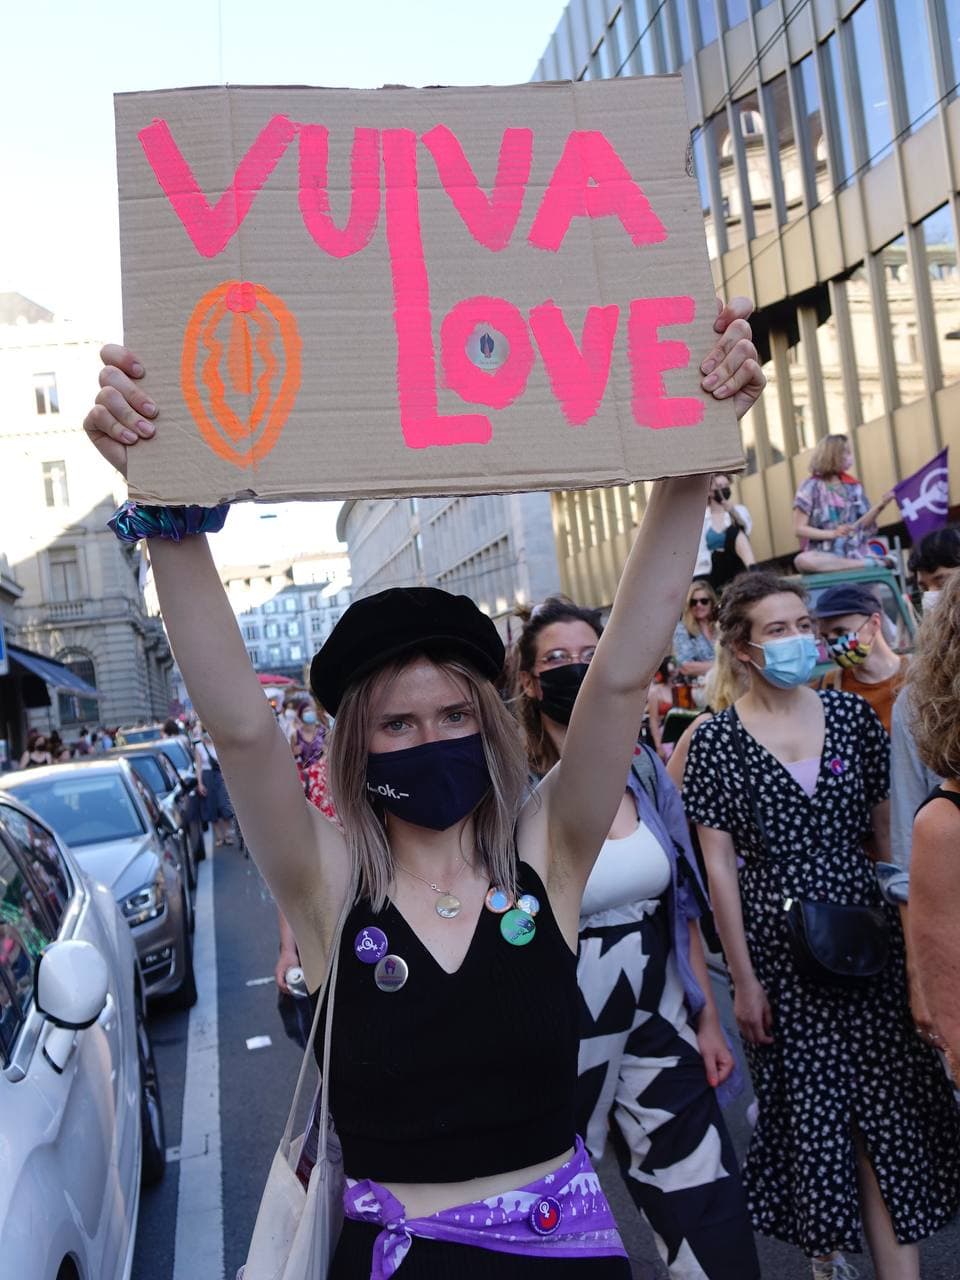 Eine Frau mit schwarzer Mütze und Schwarzer Maske und vieler feministischer Pins hält im Demozug stehend ein Schild hoch auf dem in Orange ein Vulva gezeichent ist und in Pink steht "Vulva Love" wobei das L von Vulva auch das L von Love ist. Die Person schaut direkt in die Kamera